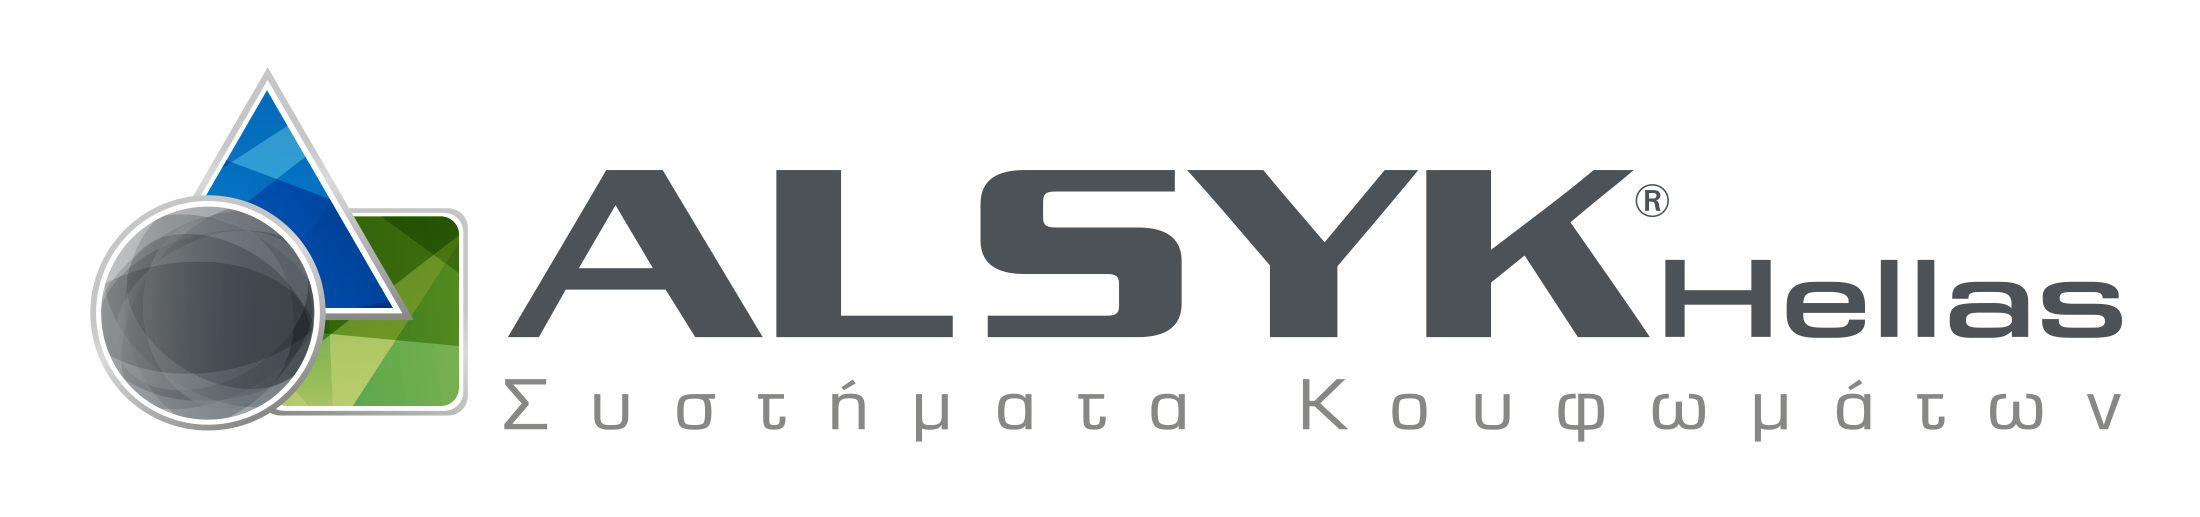 ALSYK-logo